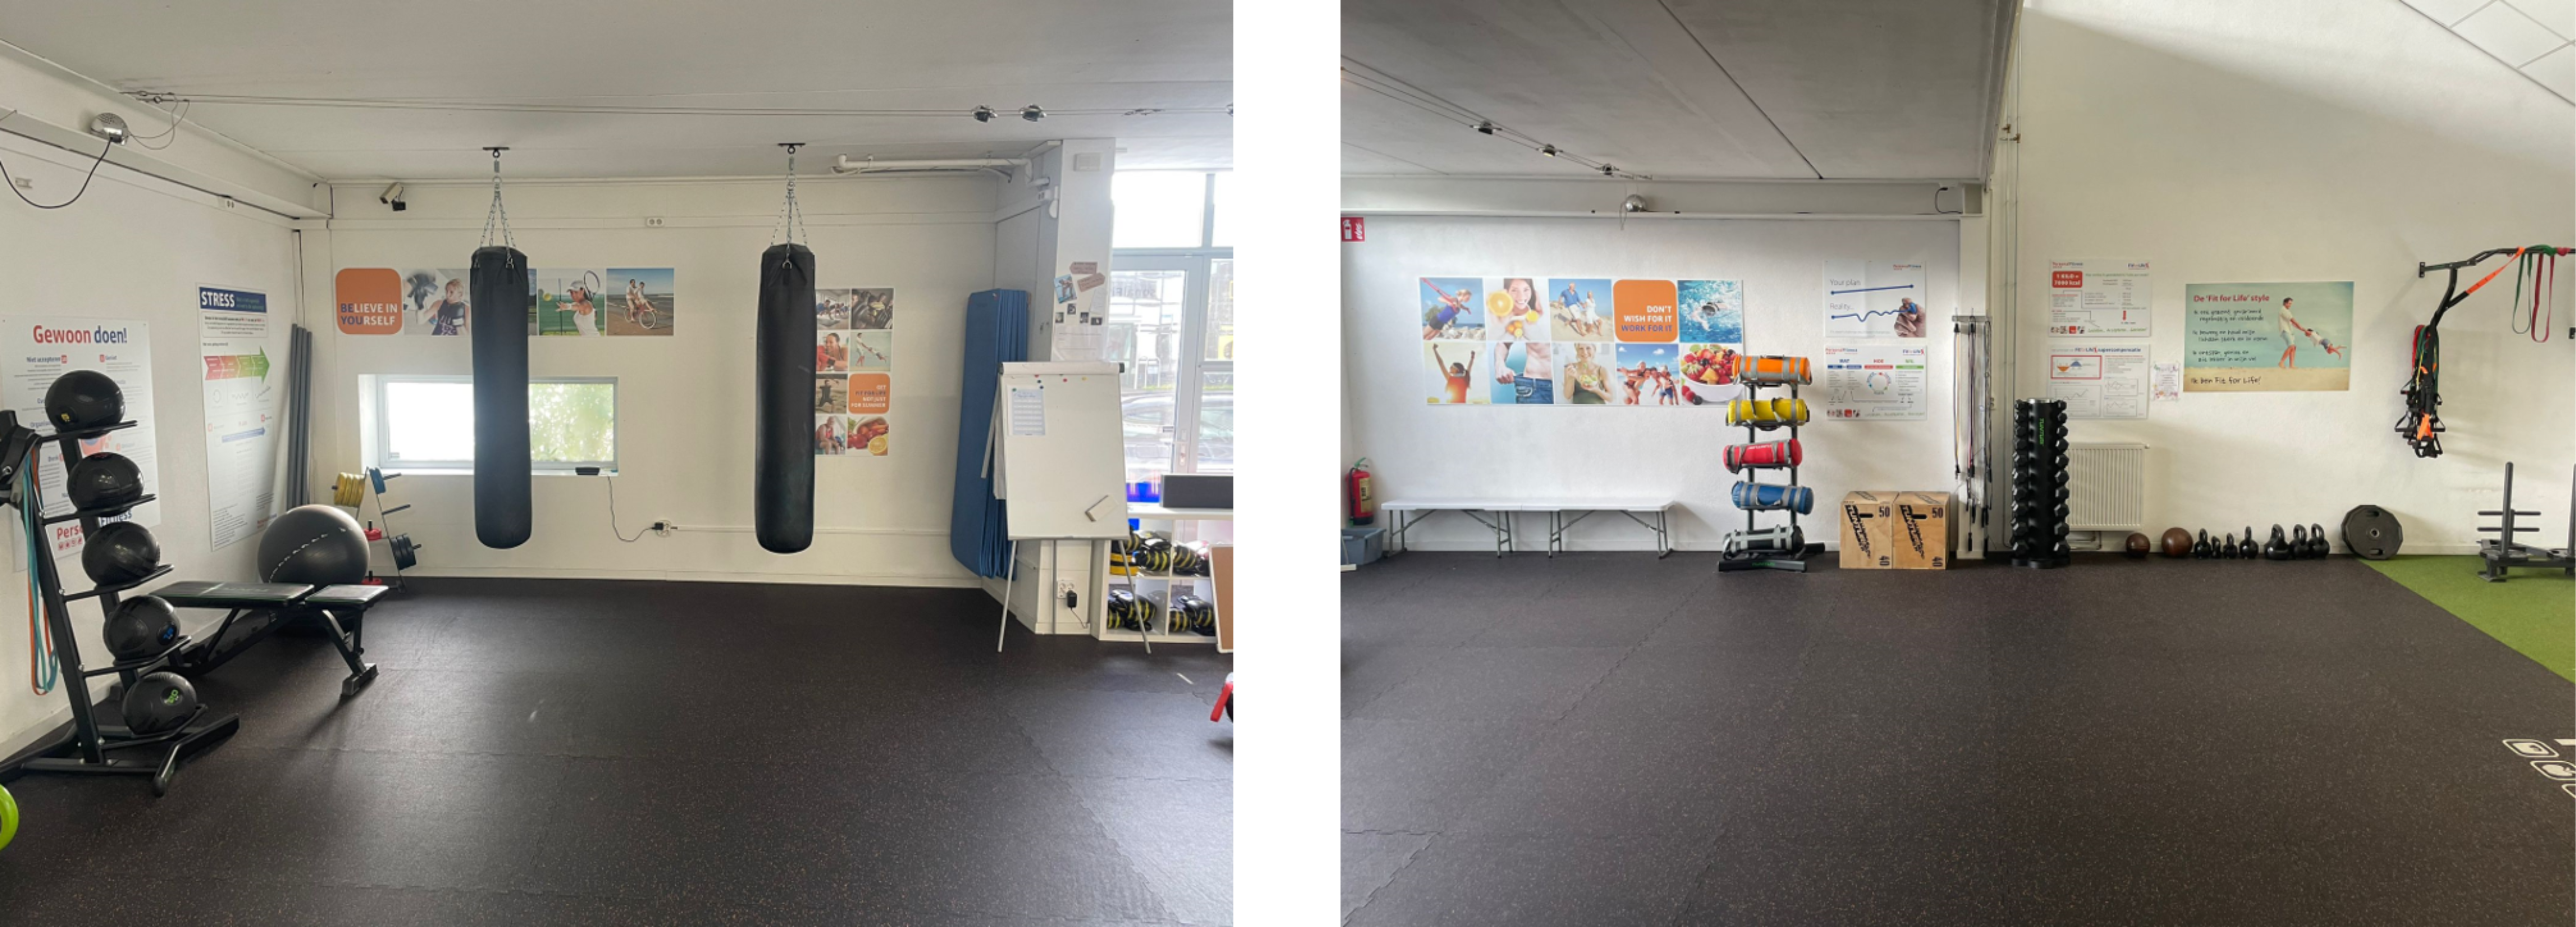 Ter overname aangeboden: Personal Fitness studio in Harderwijk pand interieur